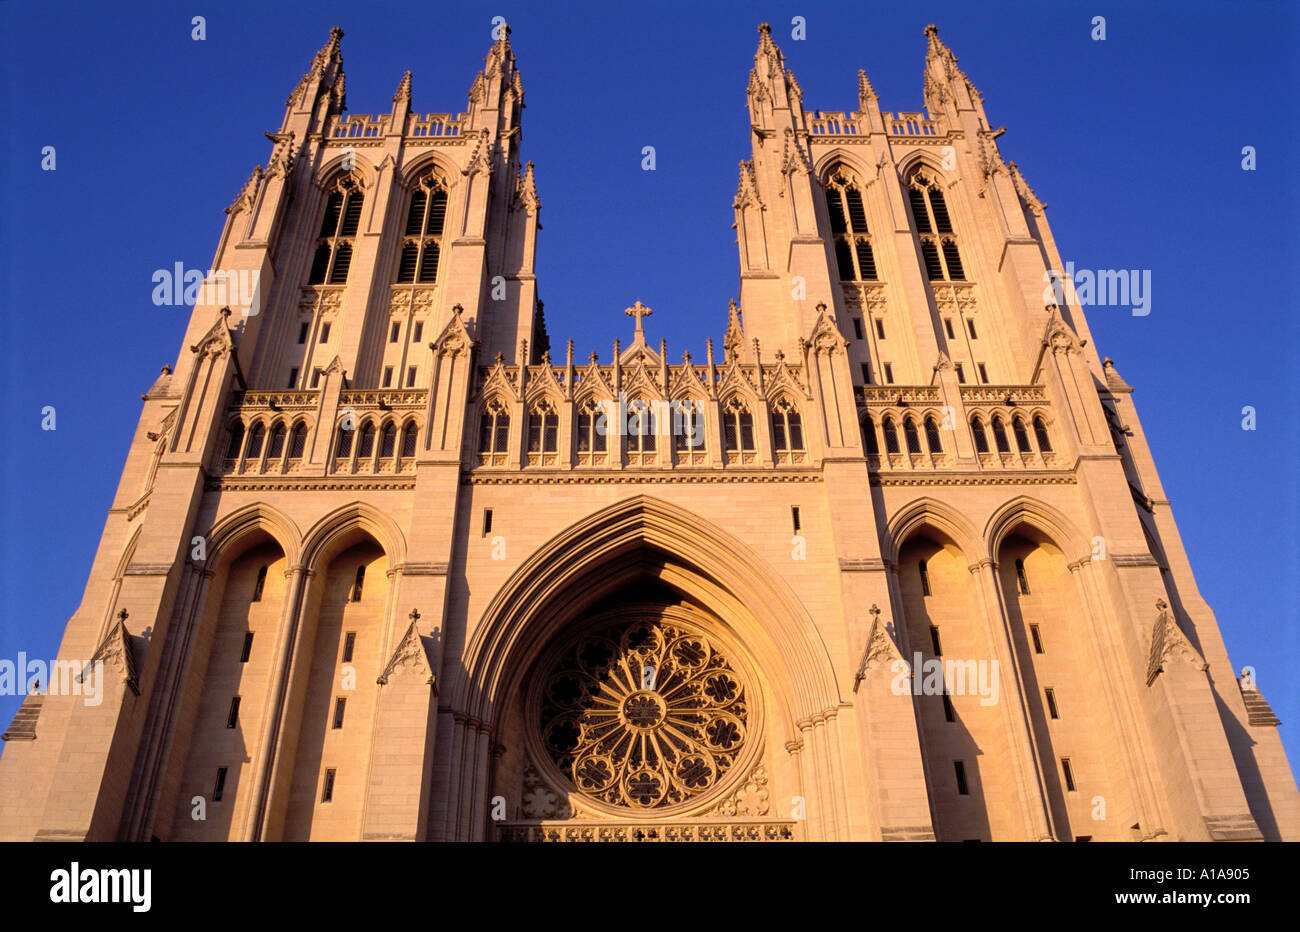 Washington National Cathedral, Washington D.C. Stock Photo